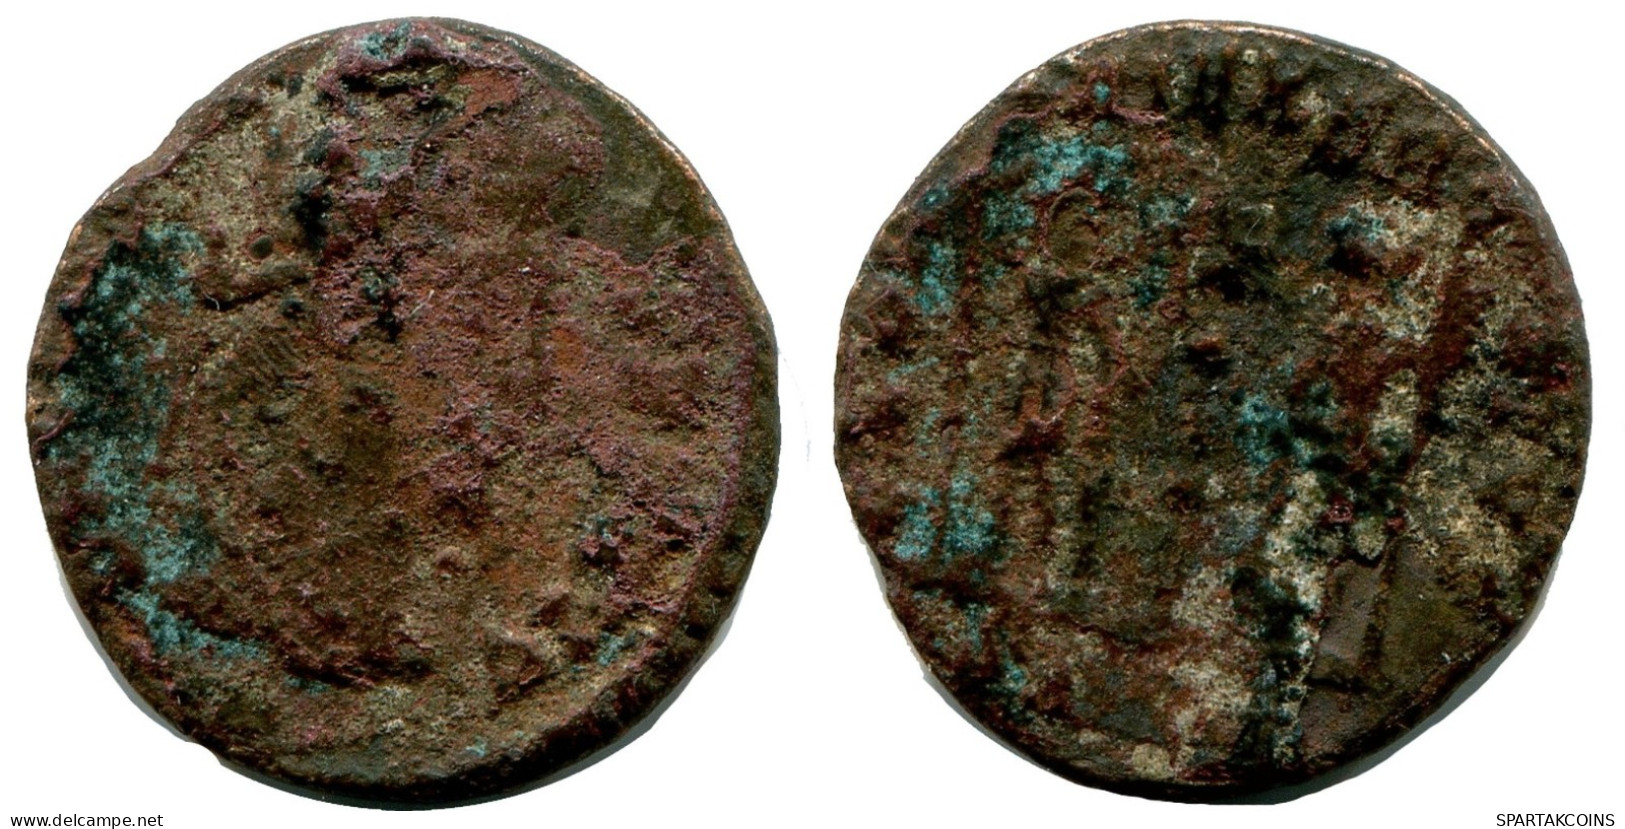 ROMAN Moneda MINTED IN ALEKSANDRIA FOUND IN IHNASYAH HOARD EGYPT #ANC10166.14.E.A - El Imperio Christiano (307 / 363)